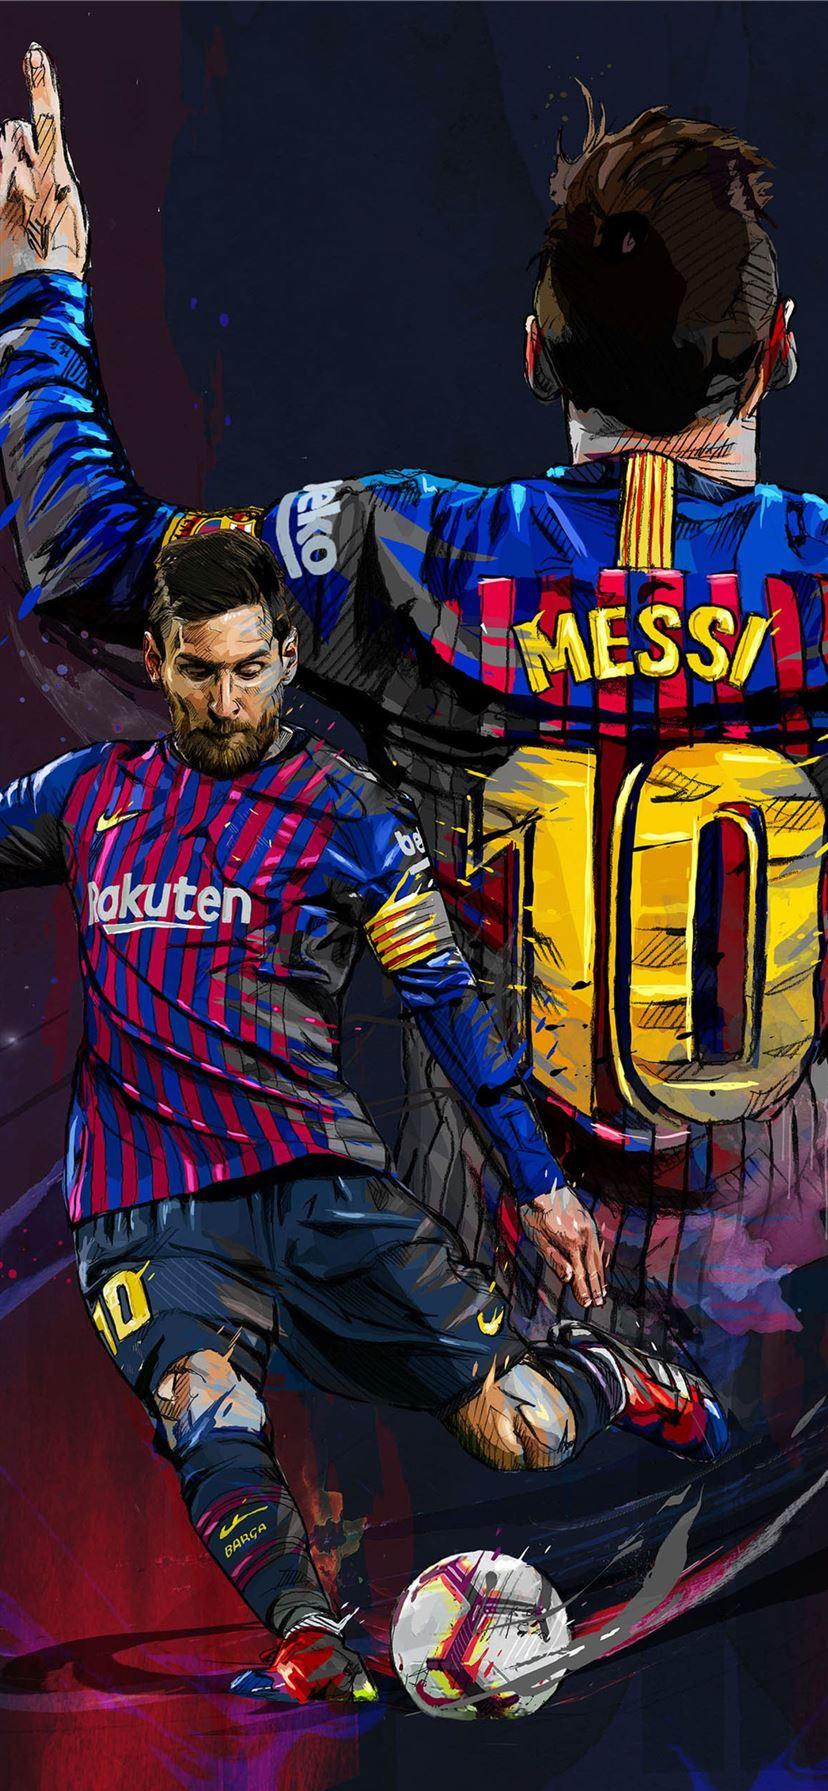 iPhone Soccer Wallpapers là thư viện hình nền đẹp về bóng đá dành riêng cho người dùng iPhone. Những bức ảnh về siêu sao như Messi, Ronaldo hay Neymar được thiết kế tỉ mỉ và chi tiết, mang đến cho người dùng những trải nghiệm tuyệt vời. Hãy truy cập iPhone Soccer Wallpapers để tải về những hình nền đẹp nhất cho chiếc điện thoại iPhone của bạn!